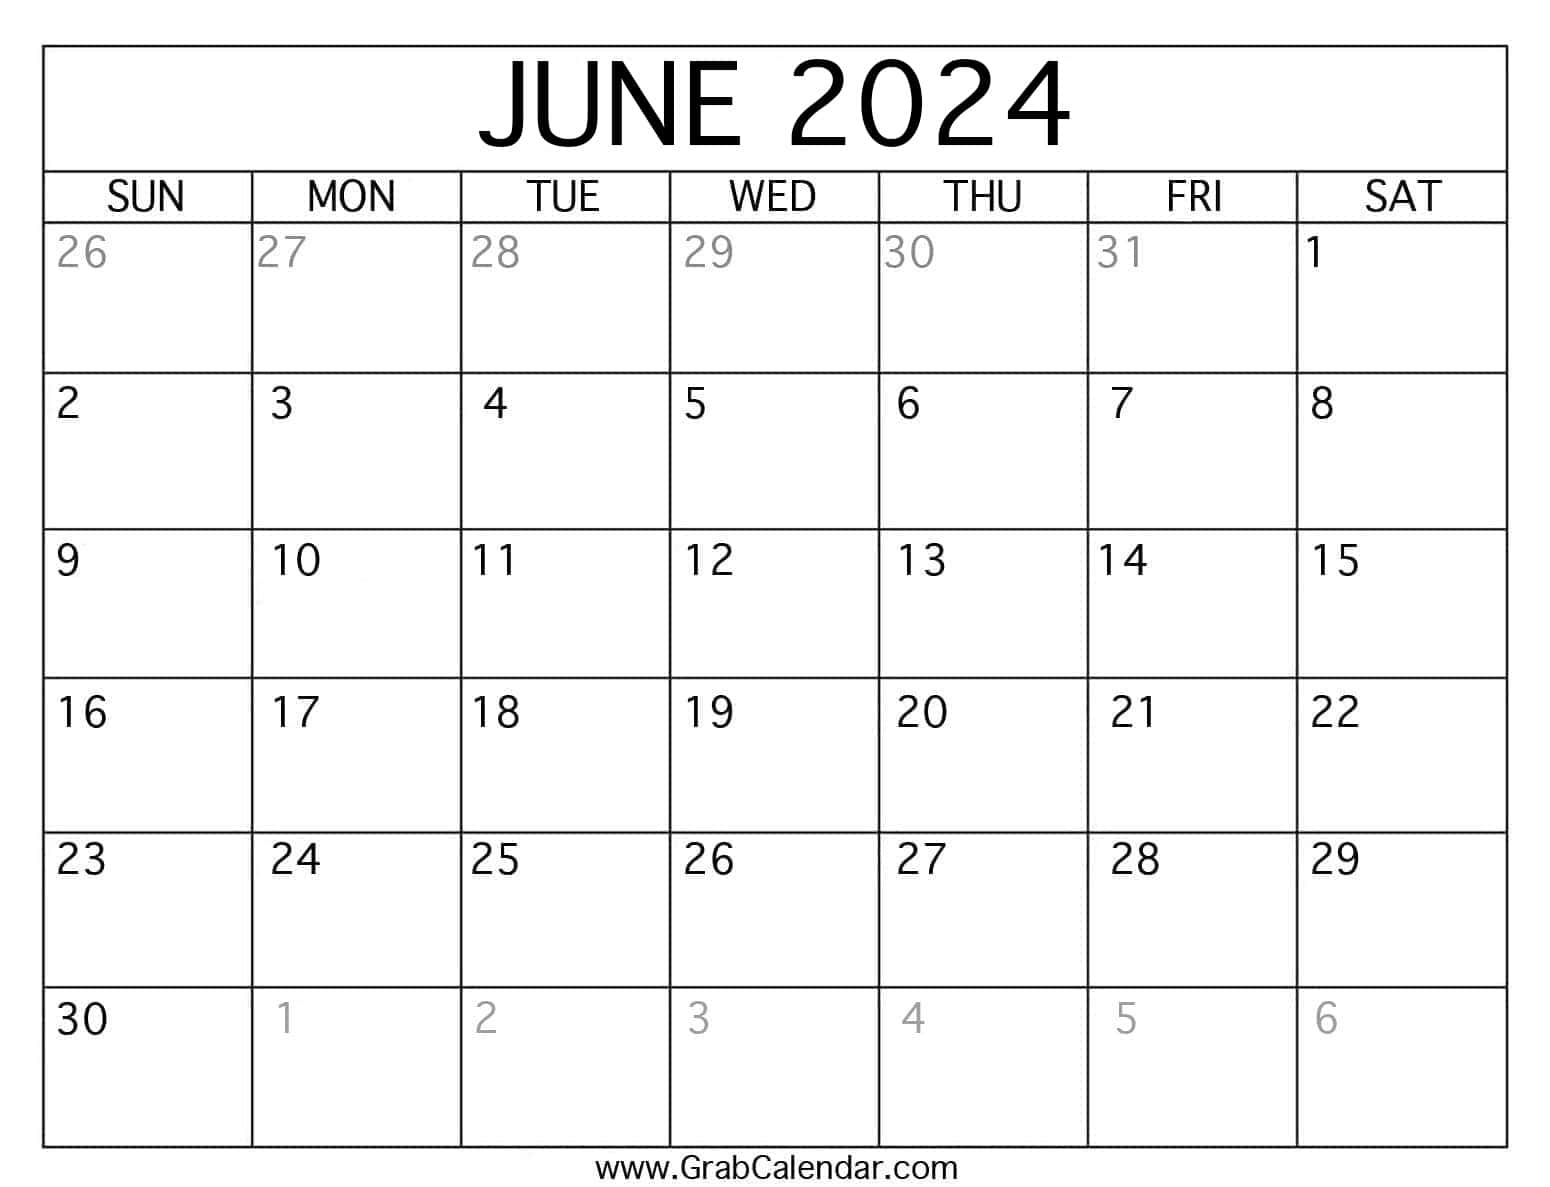 2024 June Calendar Print Out Blank 2021 - Summer 2024 Calendar